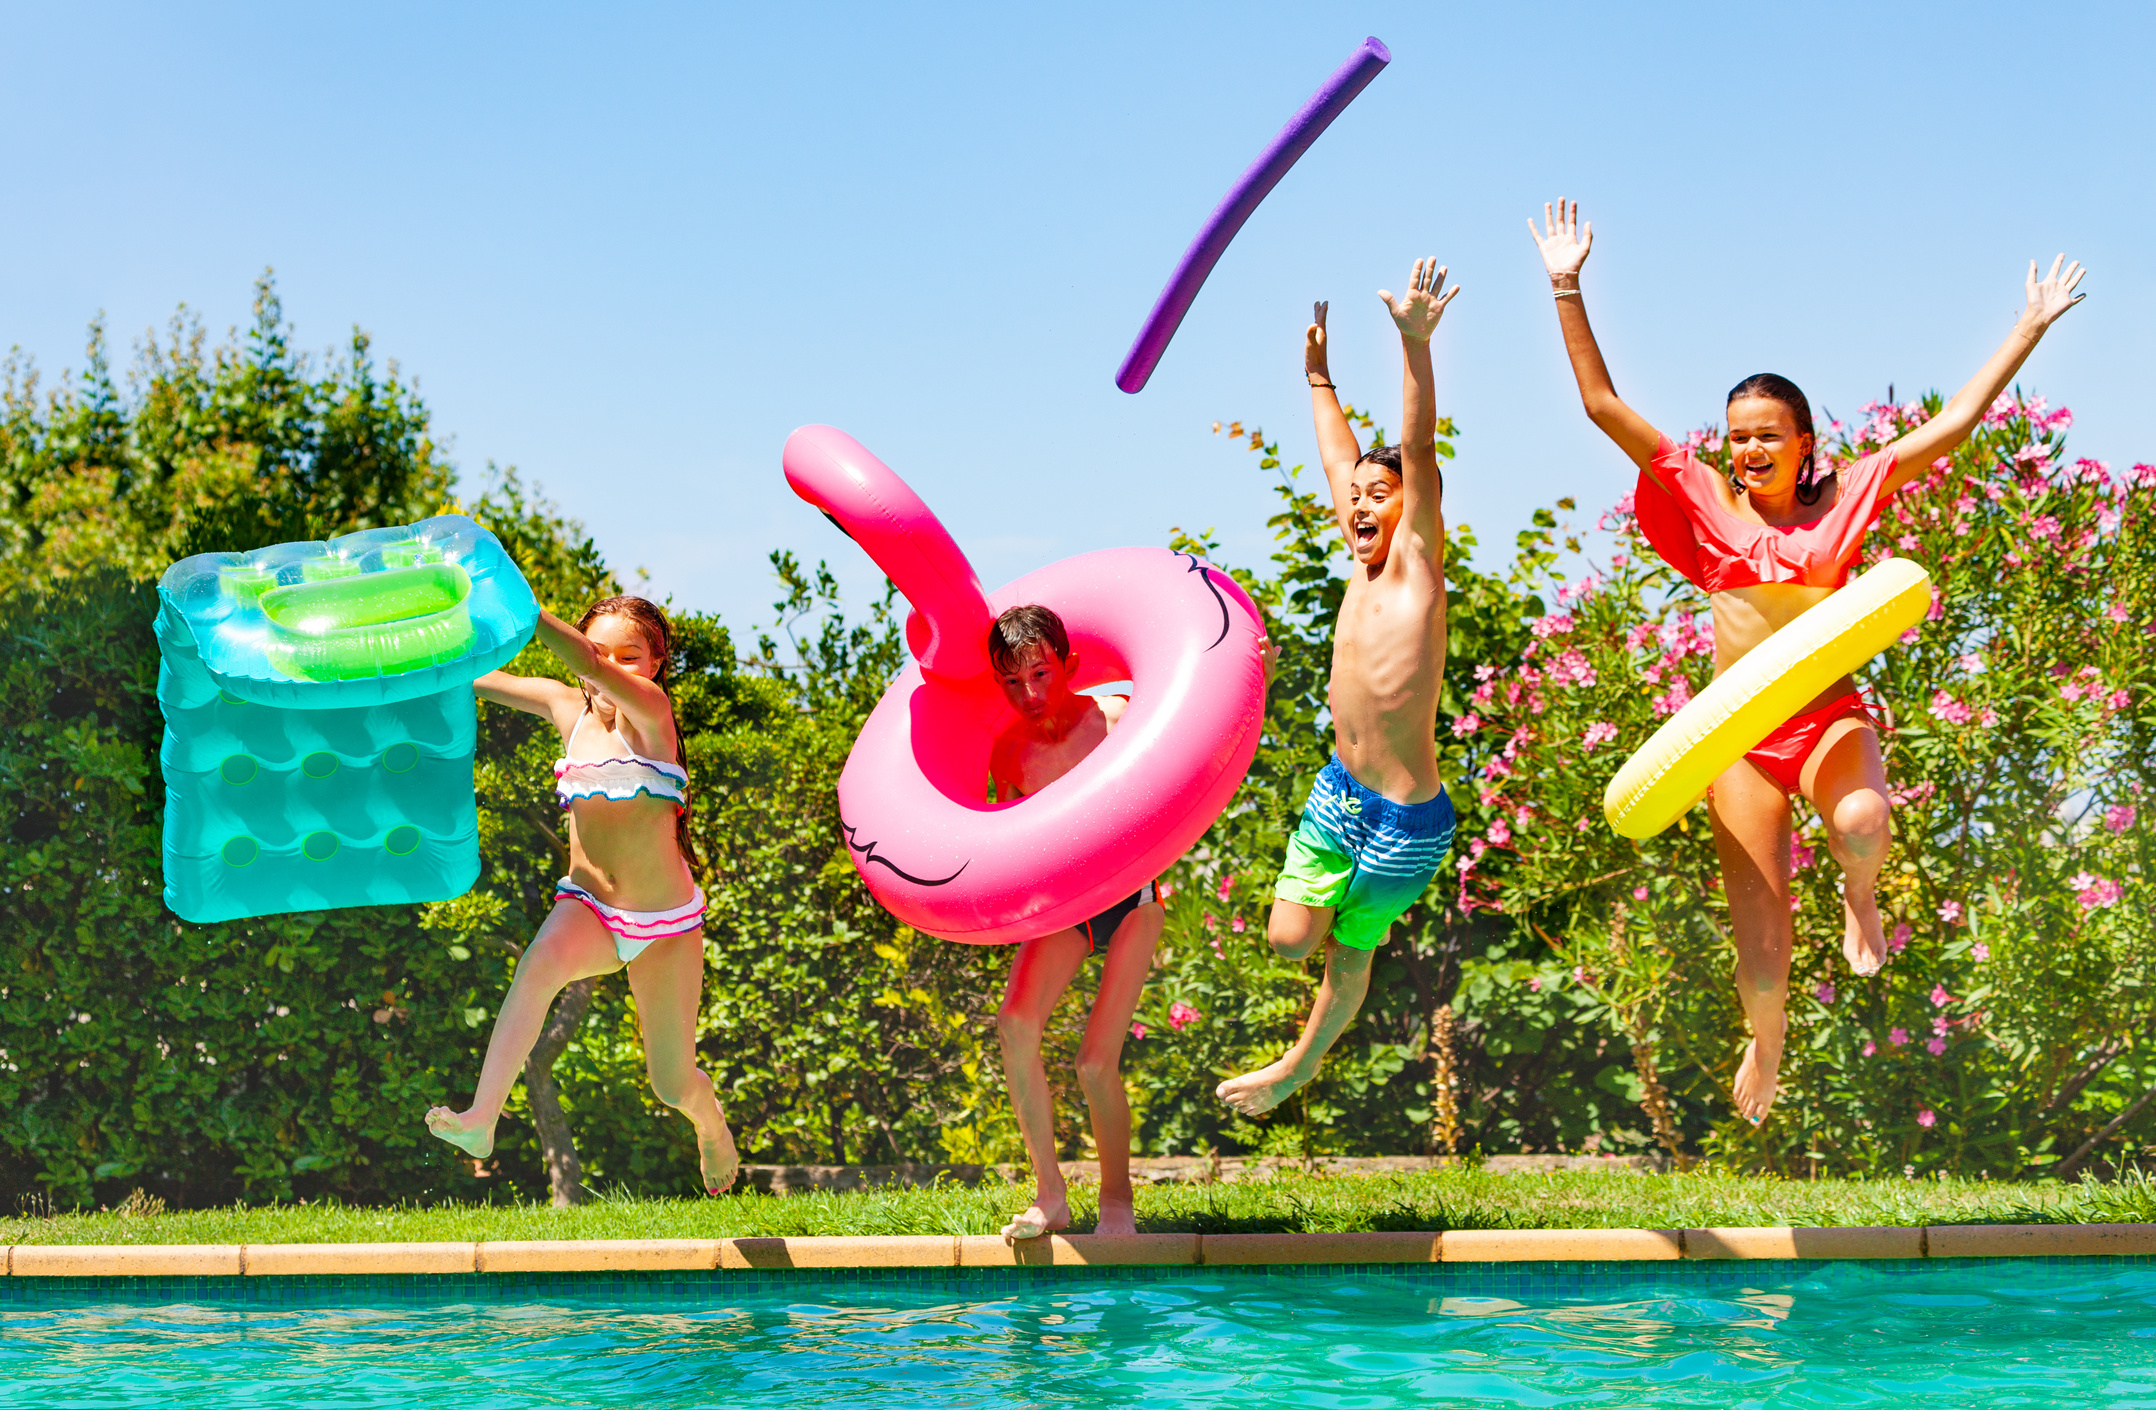 Joyful Kids Having Fun during Summer Pool Party